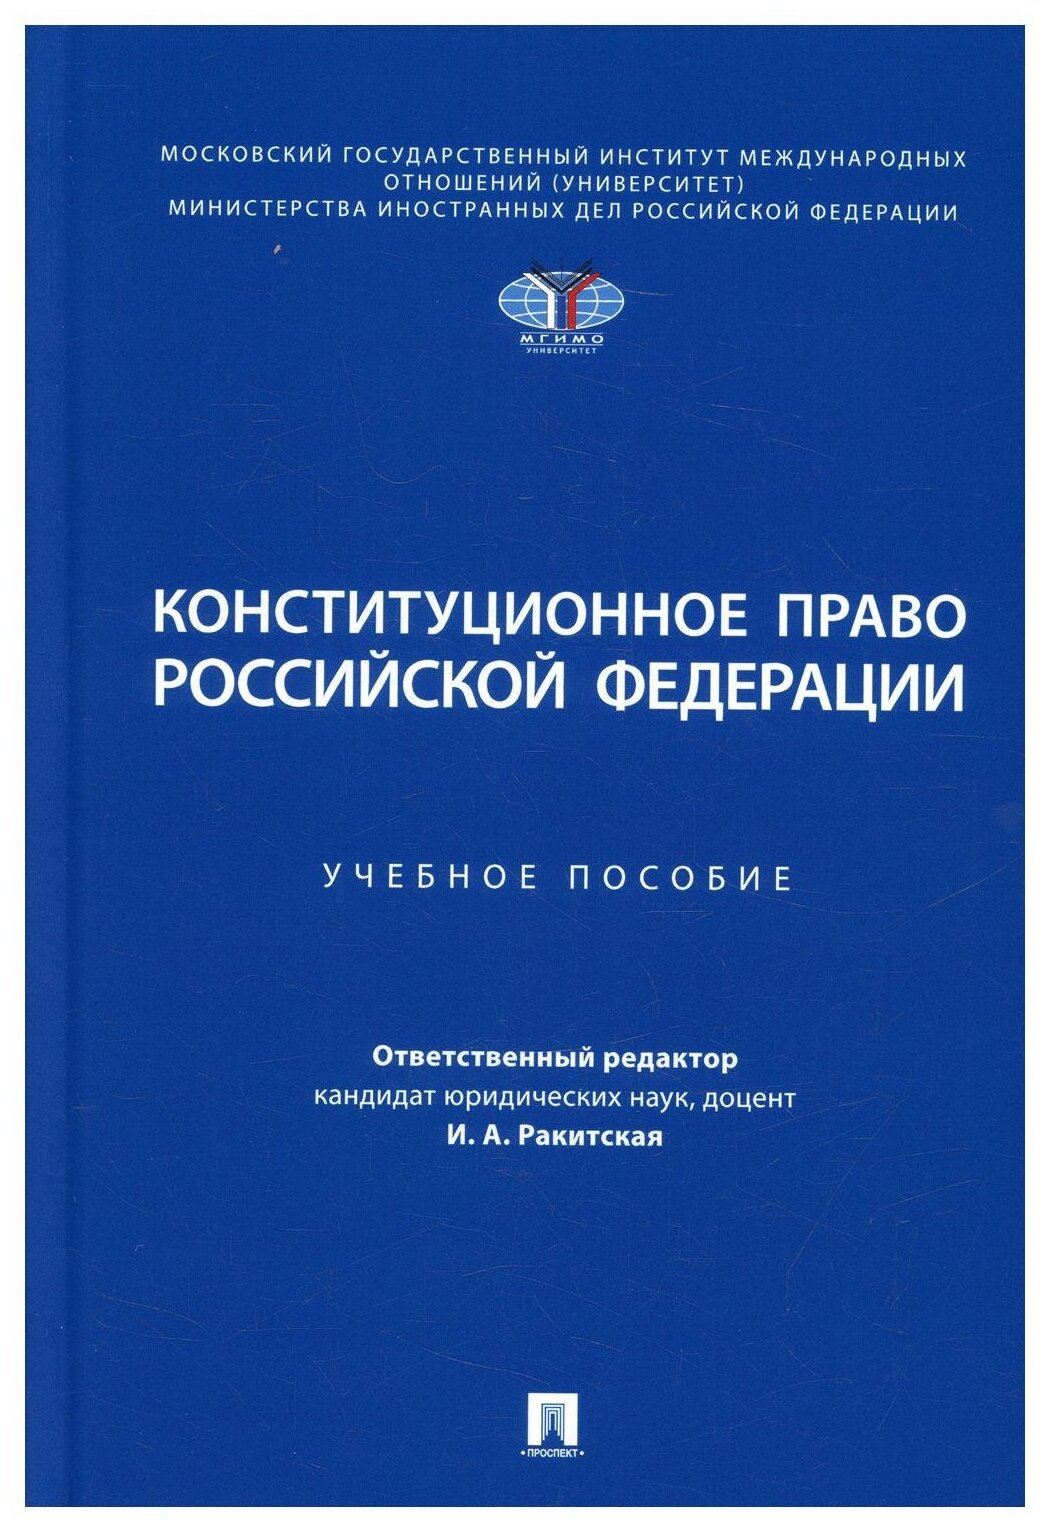 Конституционное право Российской Федерации. Учебное пособие - фото №1